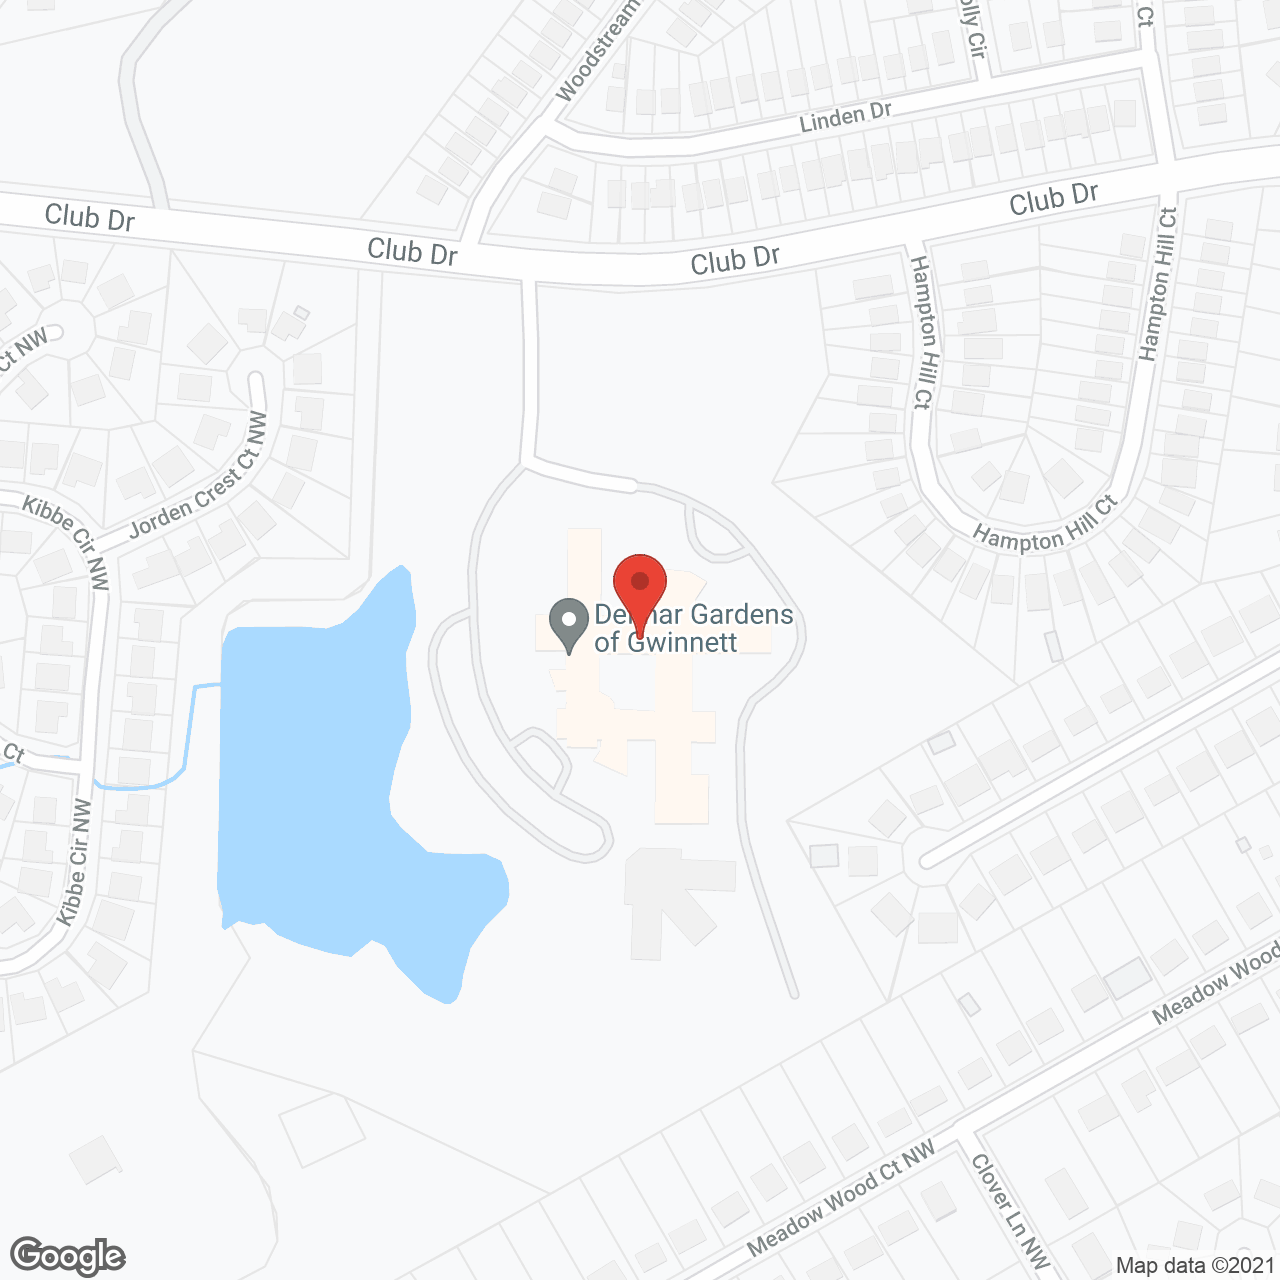 Delmar Gardens of Gwinnett in google map